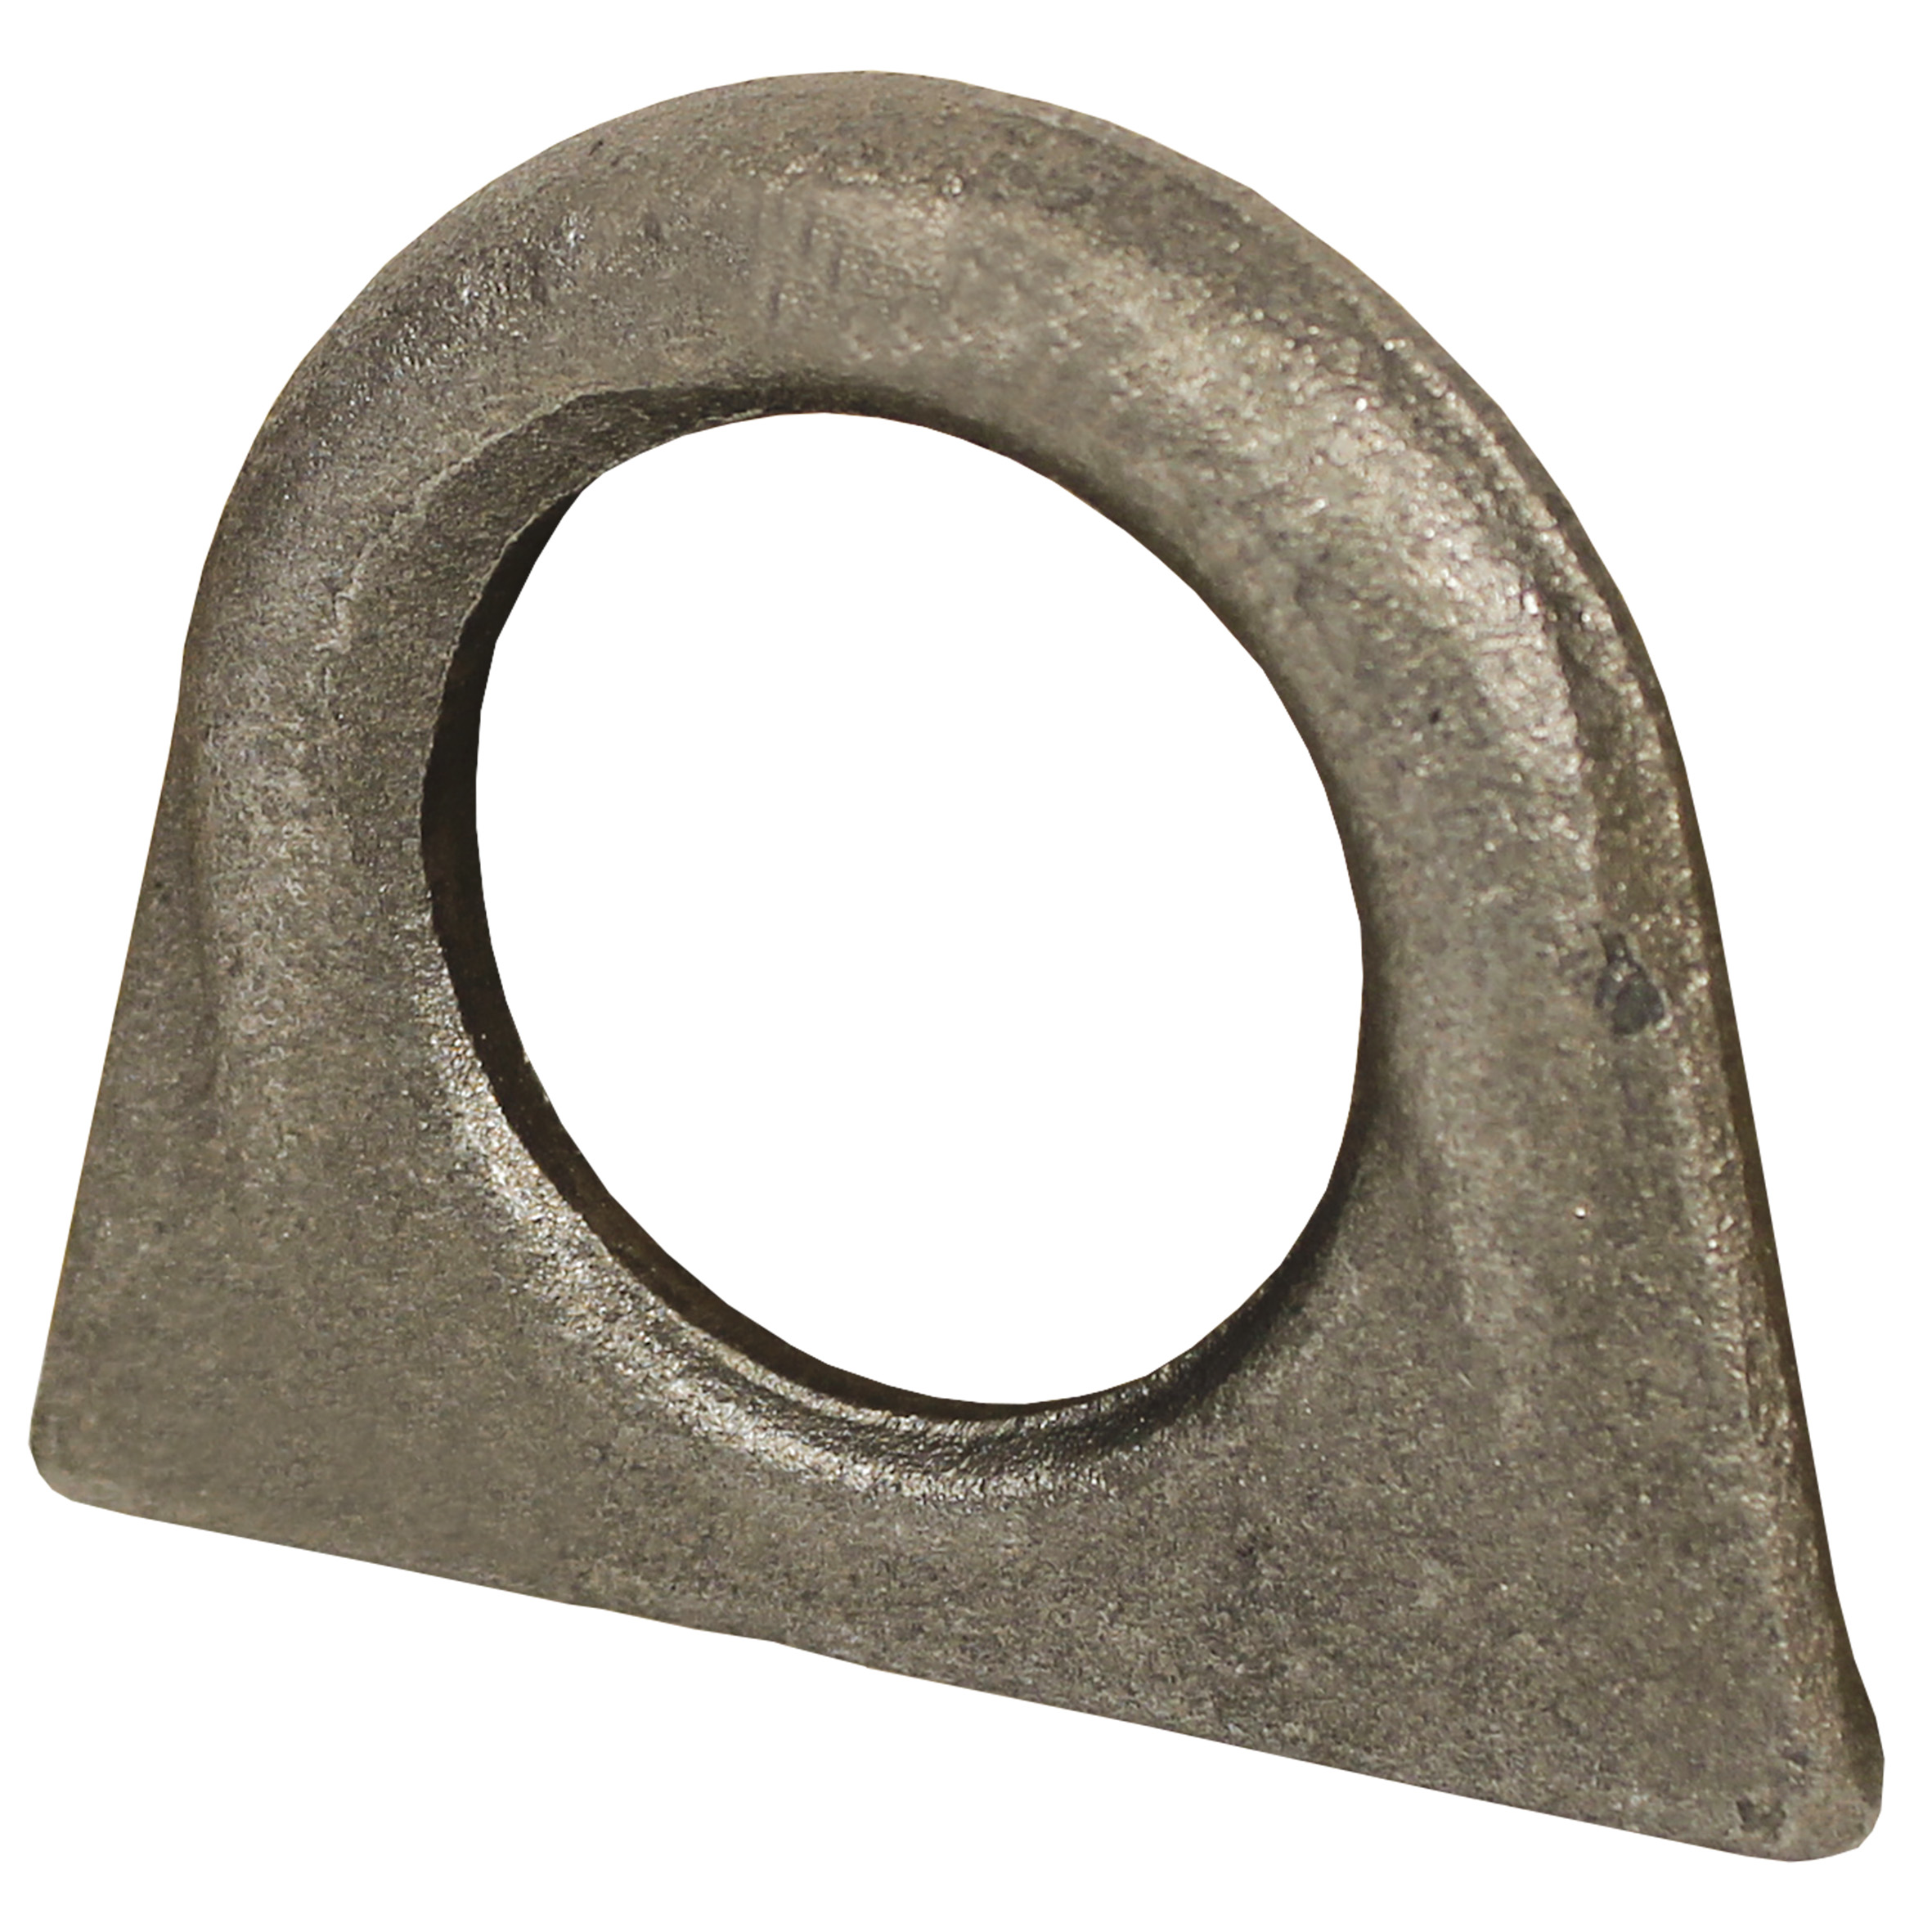 Hoist ring for welding - for straight lifts - for welding - Steel - 